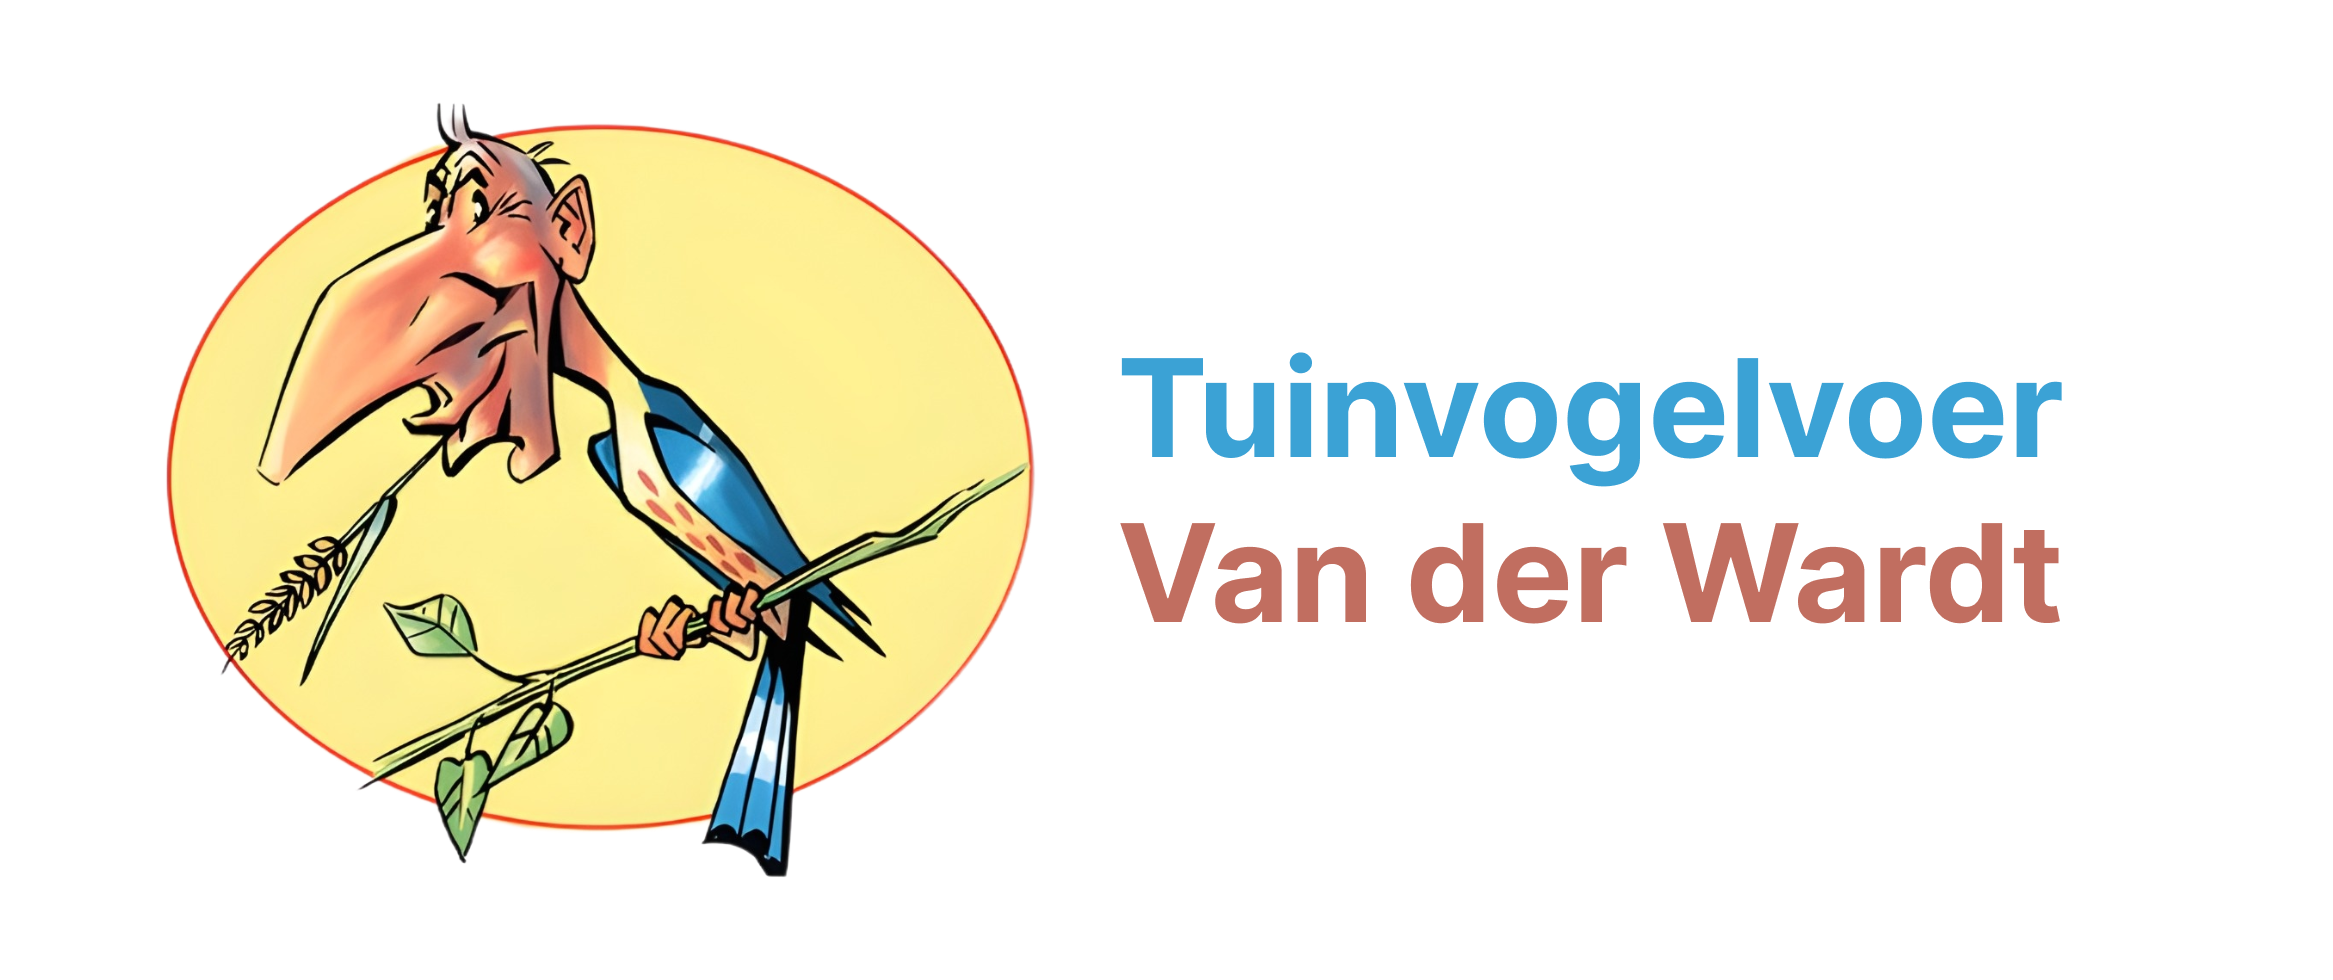 Tuinvogelvoer Van der Wardt logo